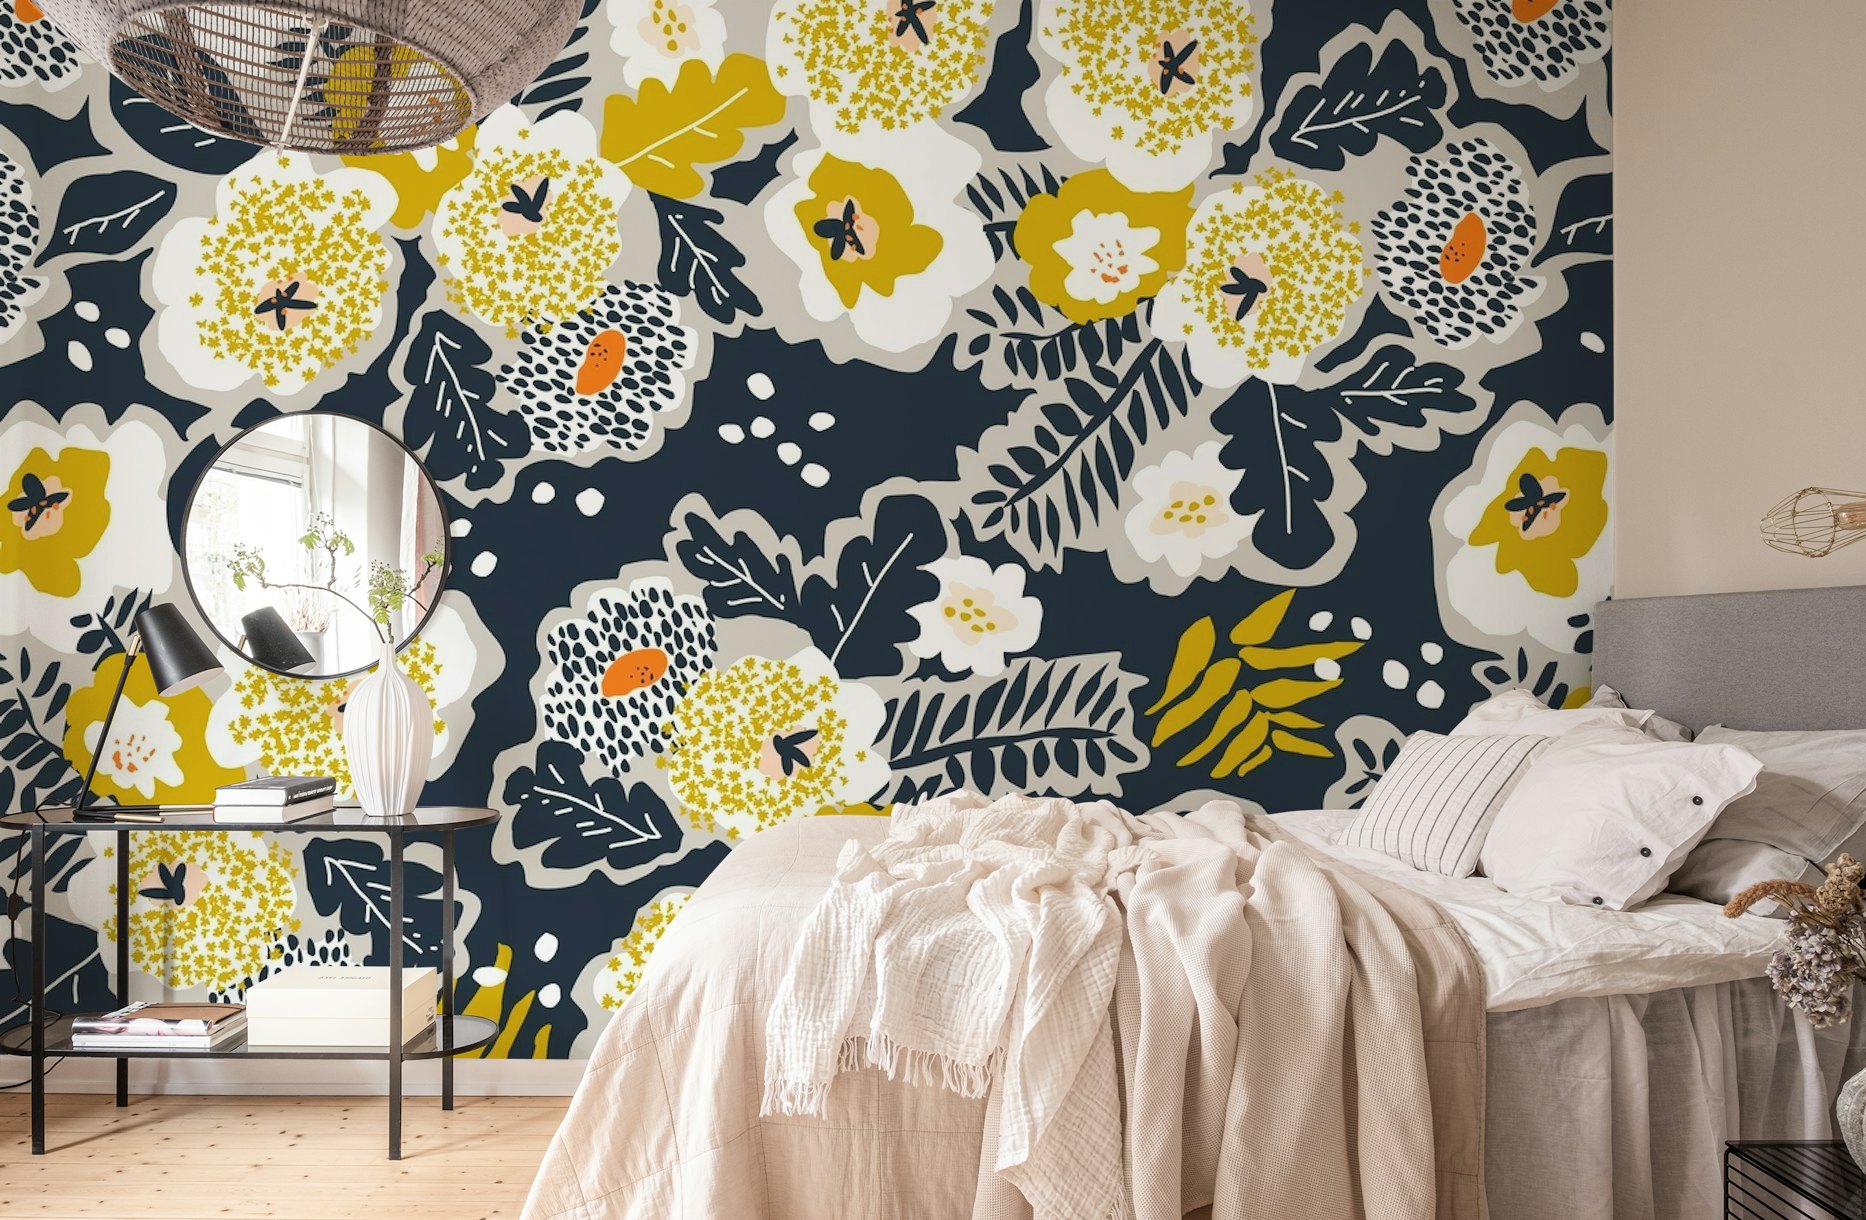 Scandinavian flowers greet you wallpaper